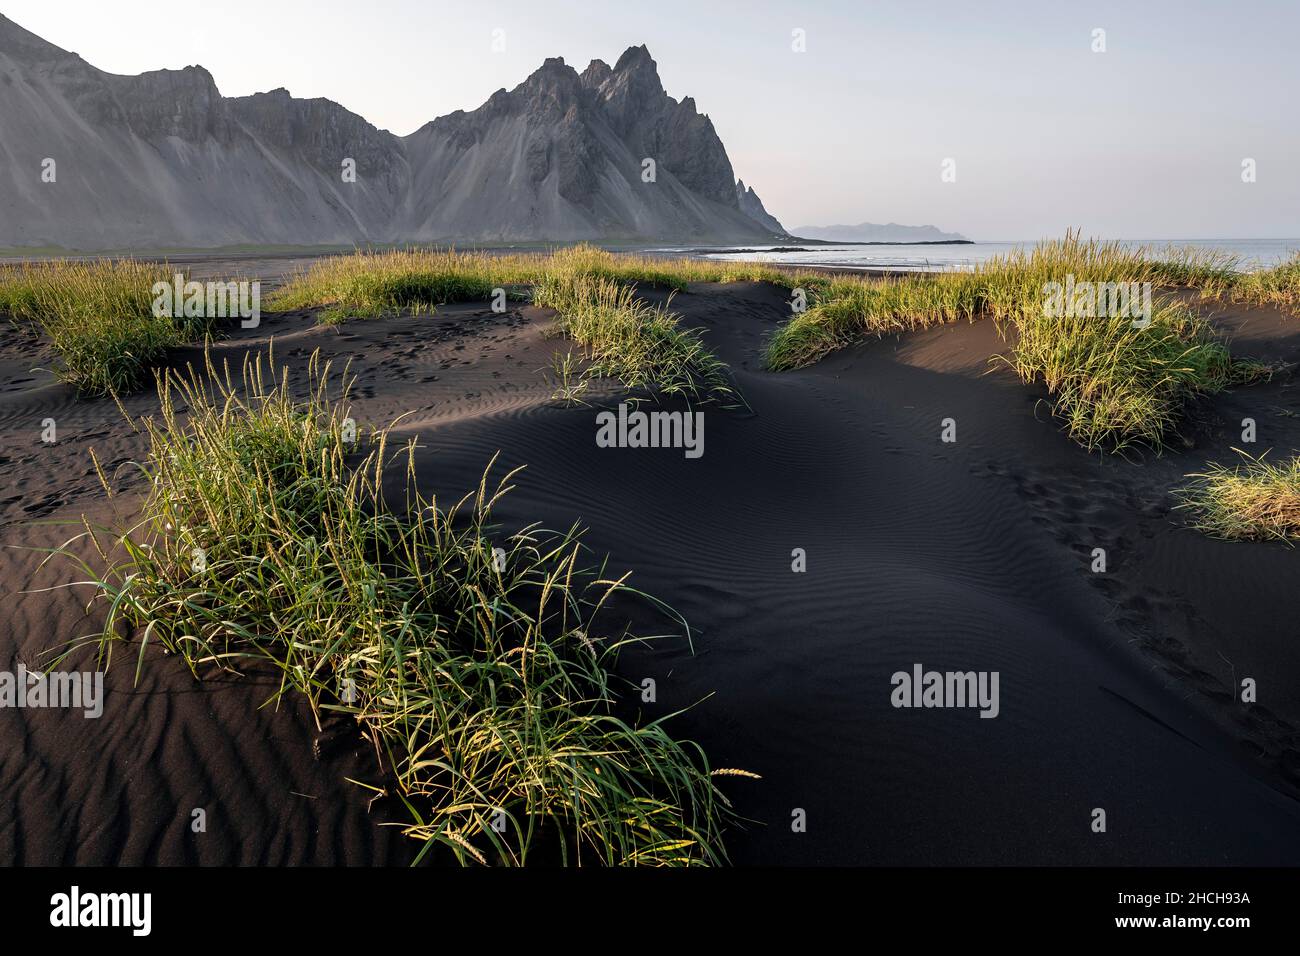 Spiaggia di lava nera, spiaggia sabbiosa, dune con erba secca, promontorio di Stokksnes, catena montuosa di Klifatindur, Austurland, Islanda orientale, Islanda Foto Stock